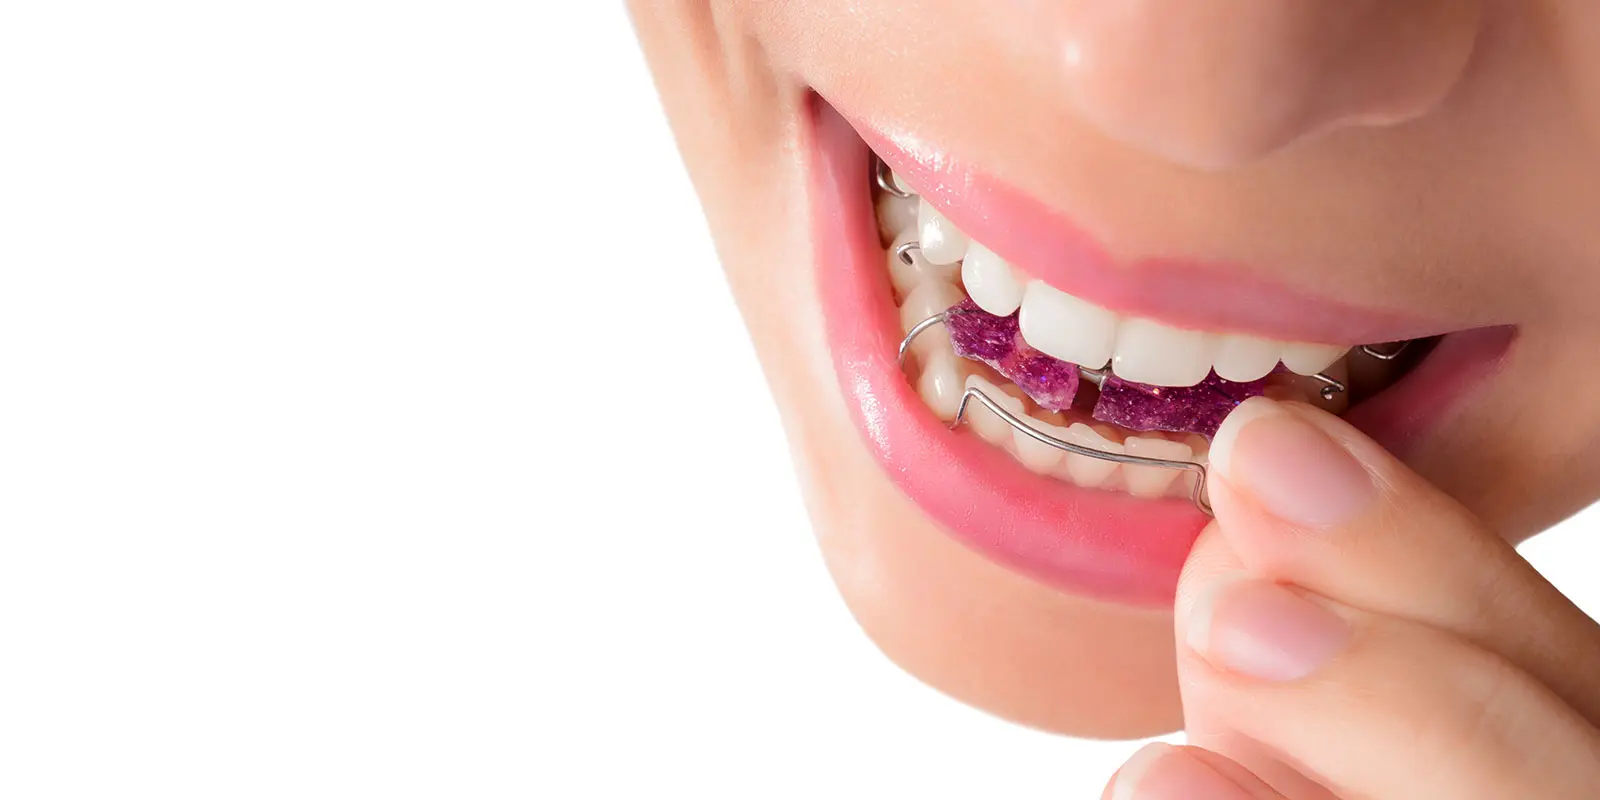 aparato funcional ortodoncia - Qué son los aparatos funcionales en ortodoncia